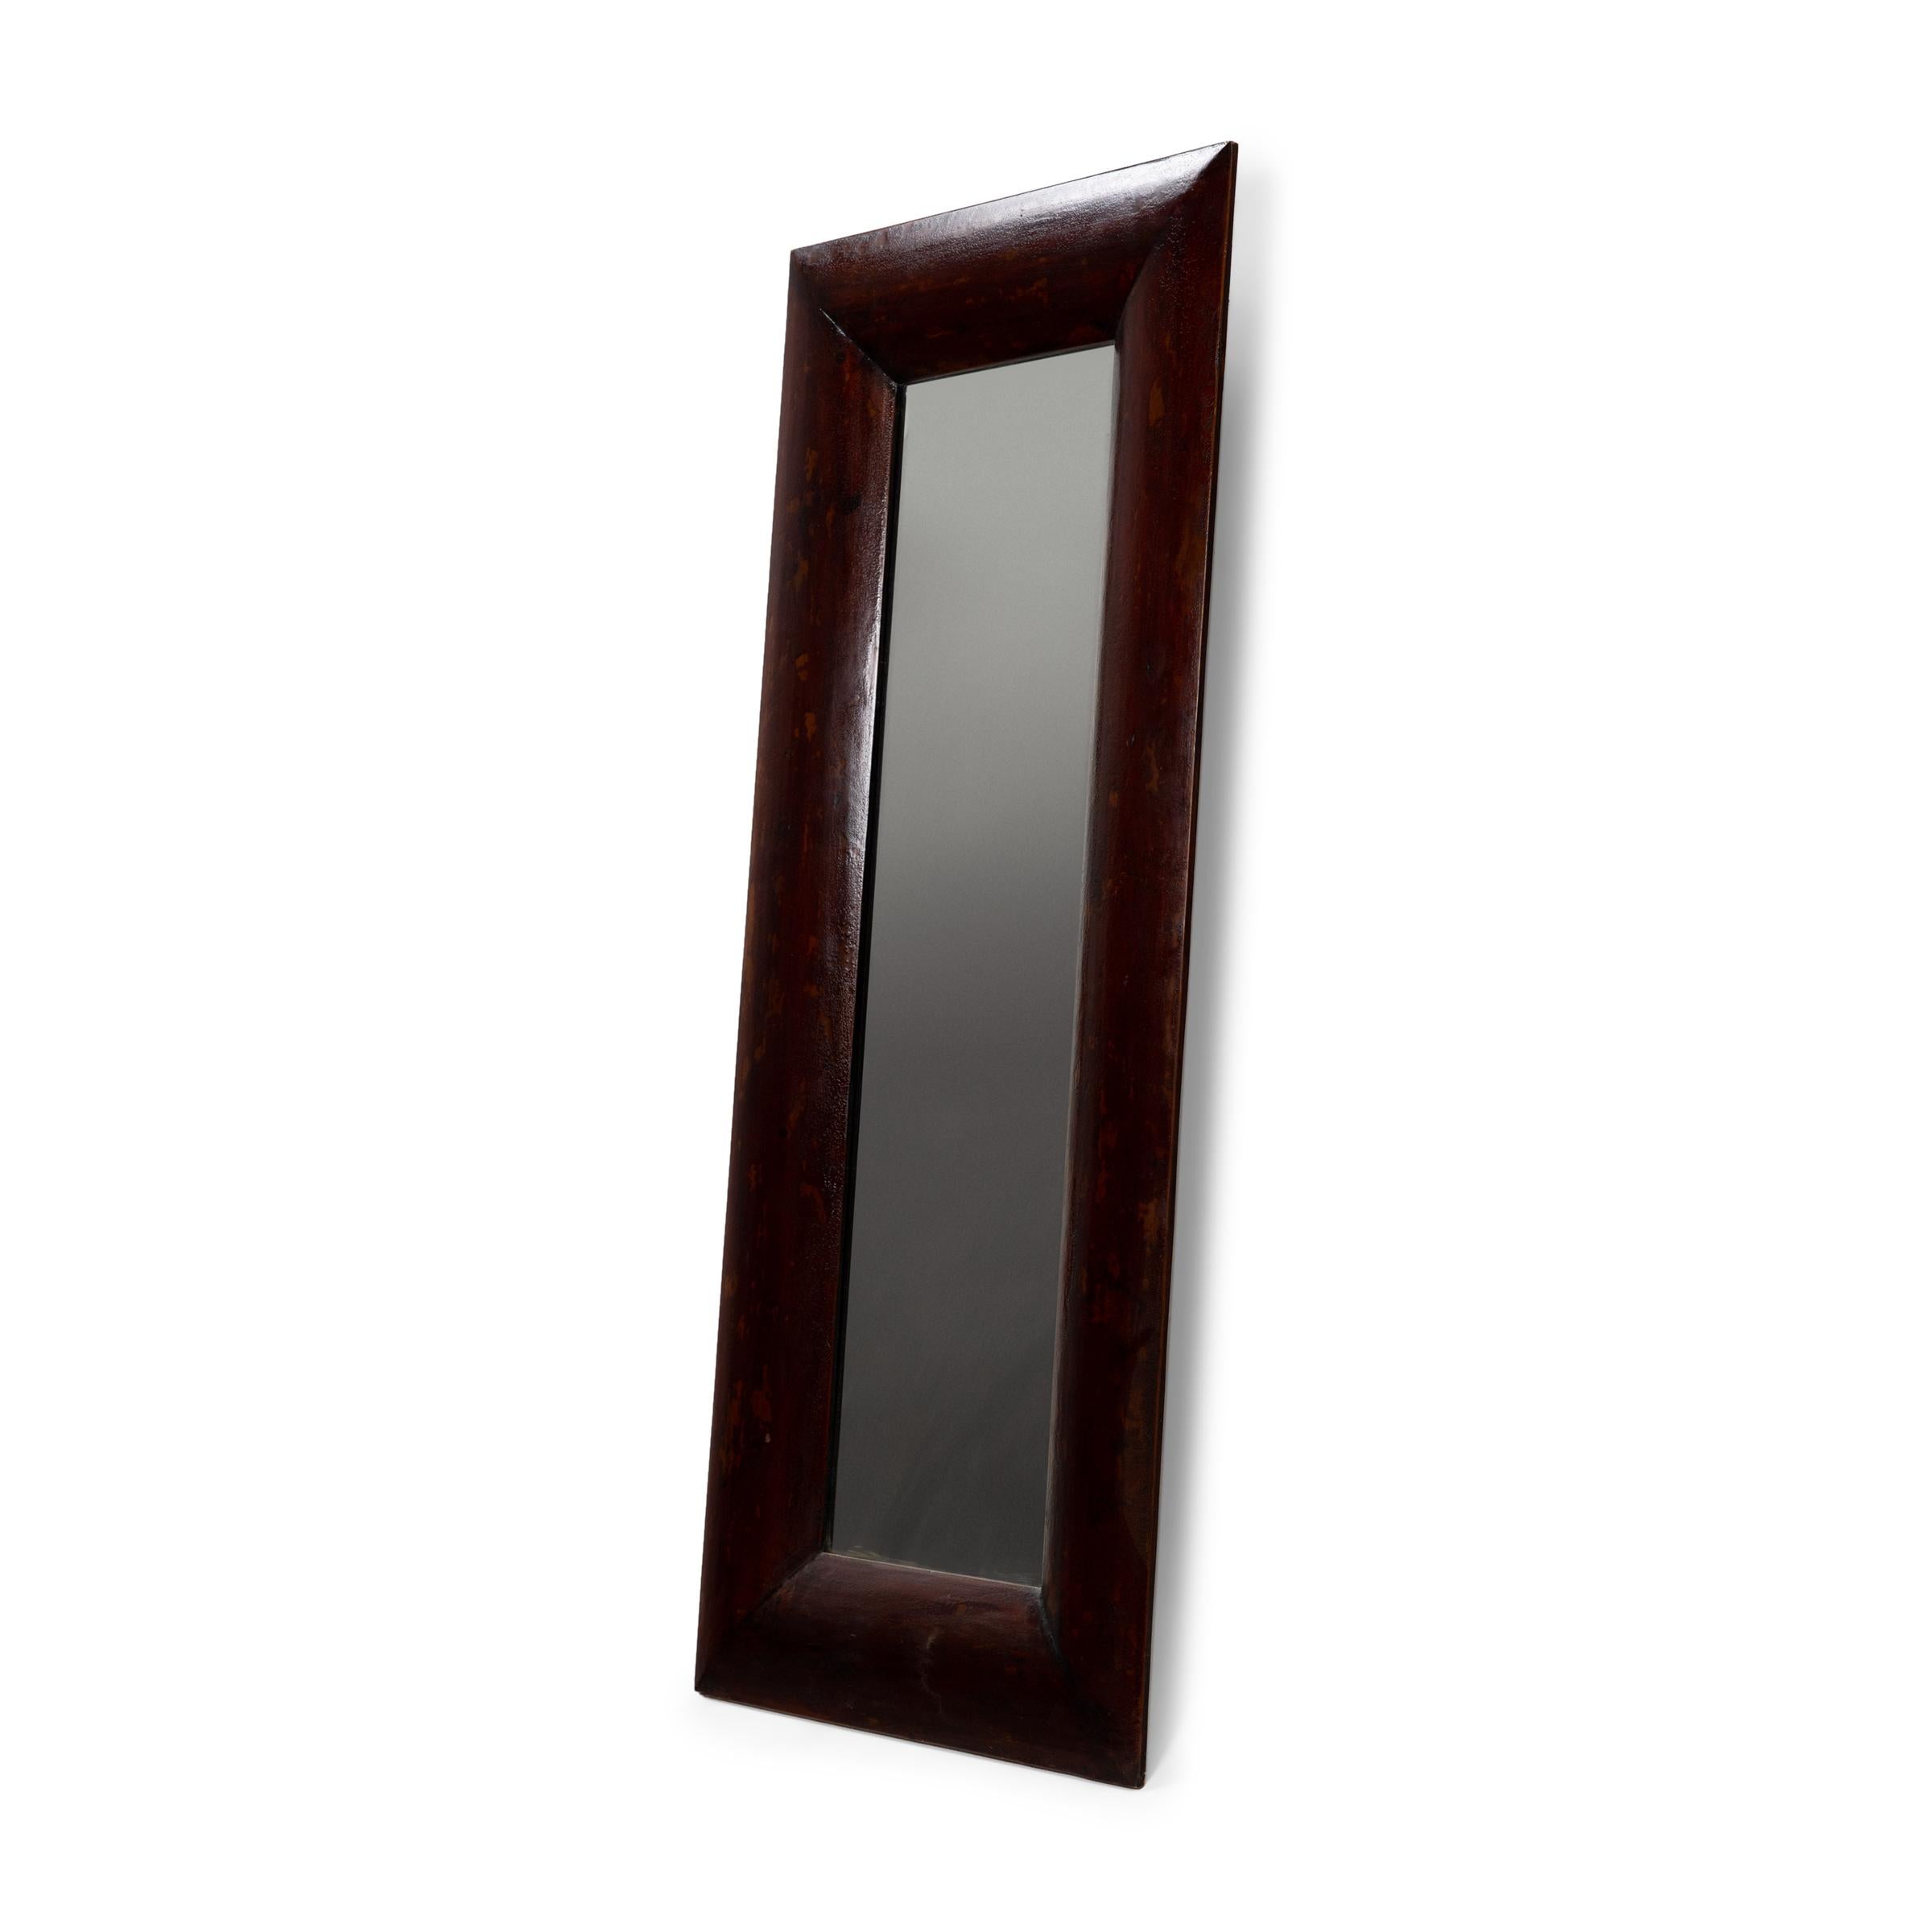 Ce grand miroir rectangulaire est doté d'un cadre en bois simple et d'une riche finition laquée brun-rouge. Légèrement craquelé et texturé par des années d'utilisation, nous aimons ce miroir de sol chinois pour sa forme élégante et sa construction